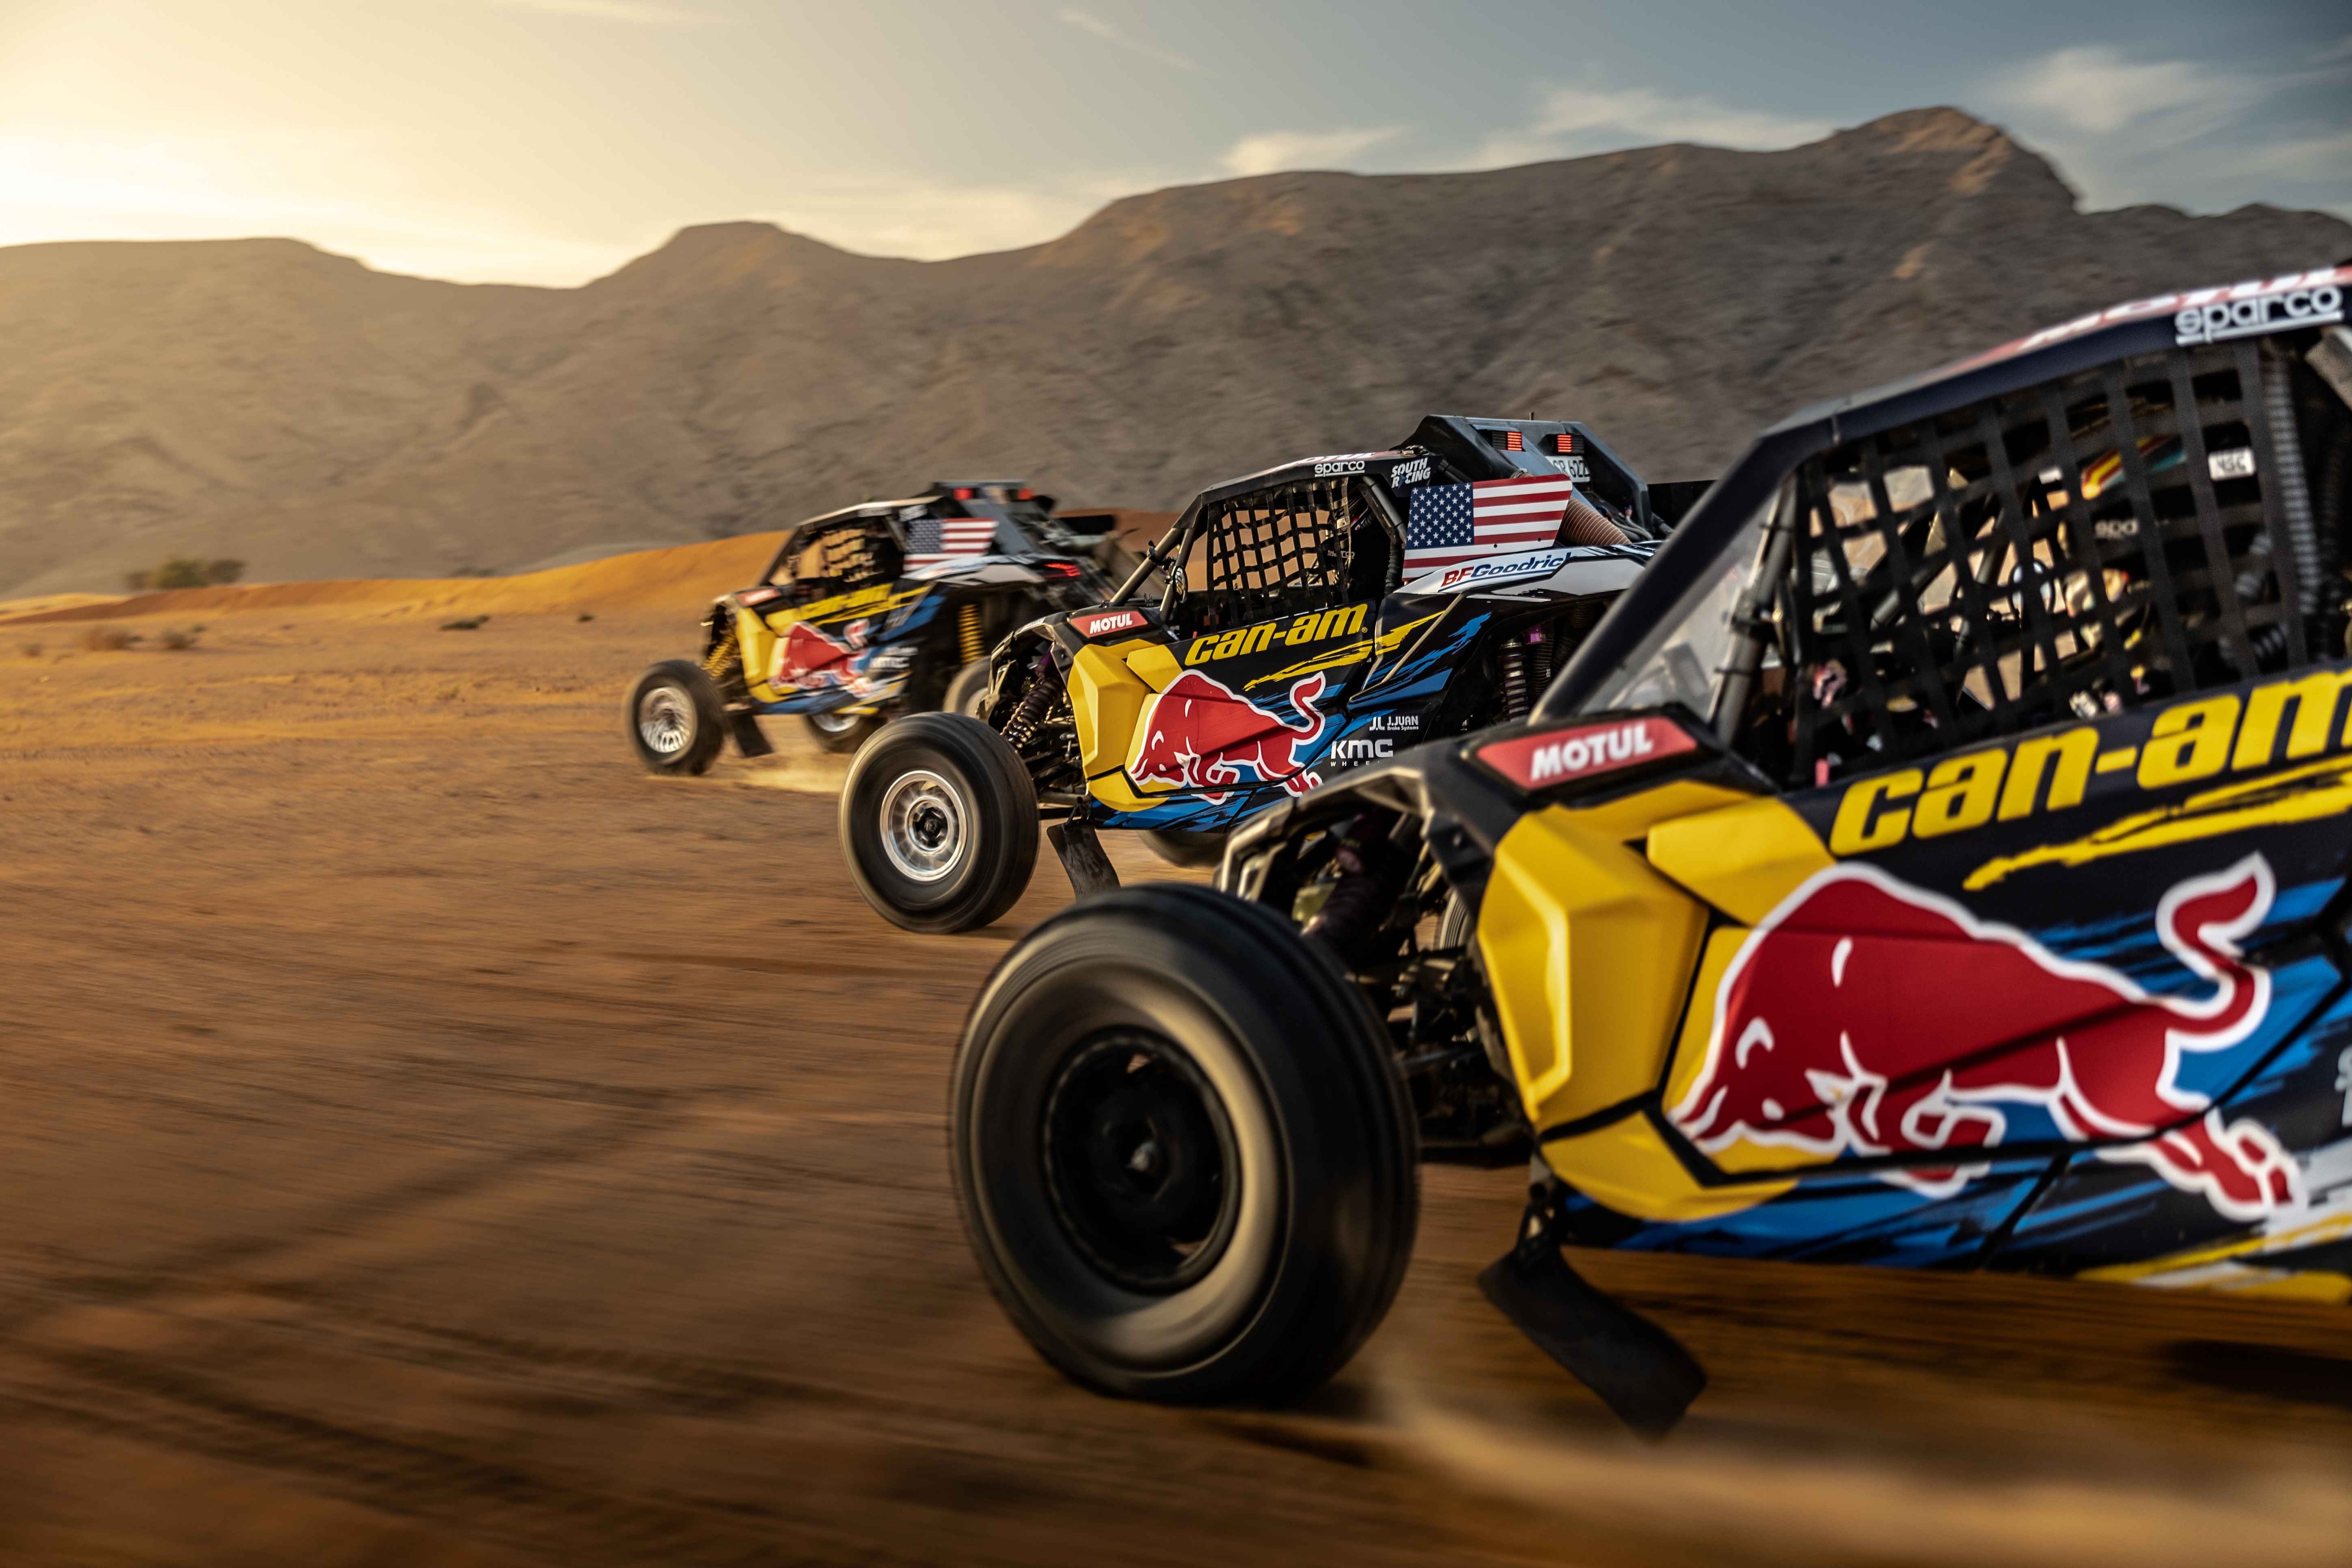 3 Maverick X3 Racing en el desierto